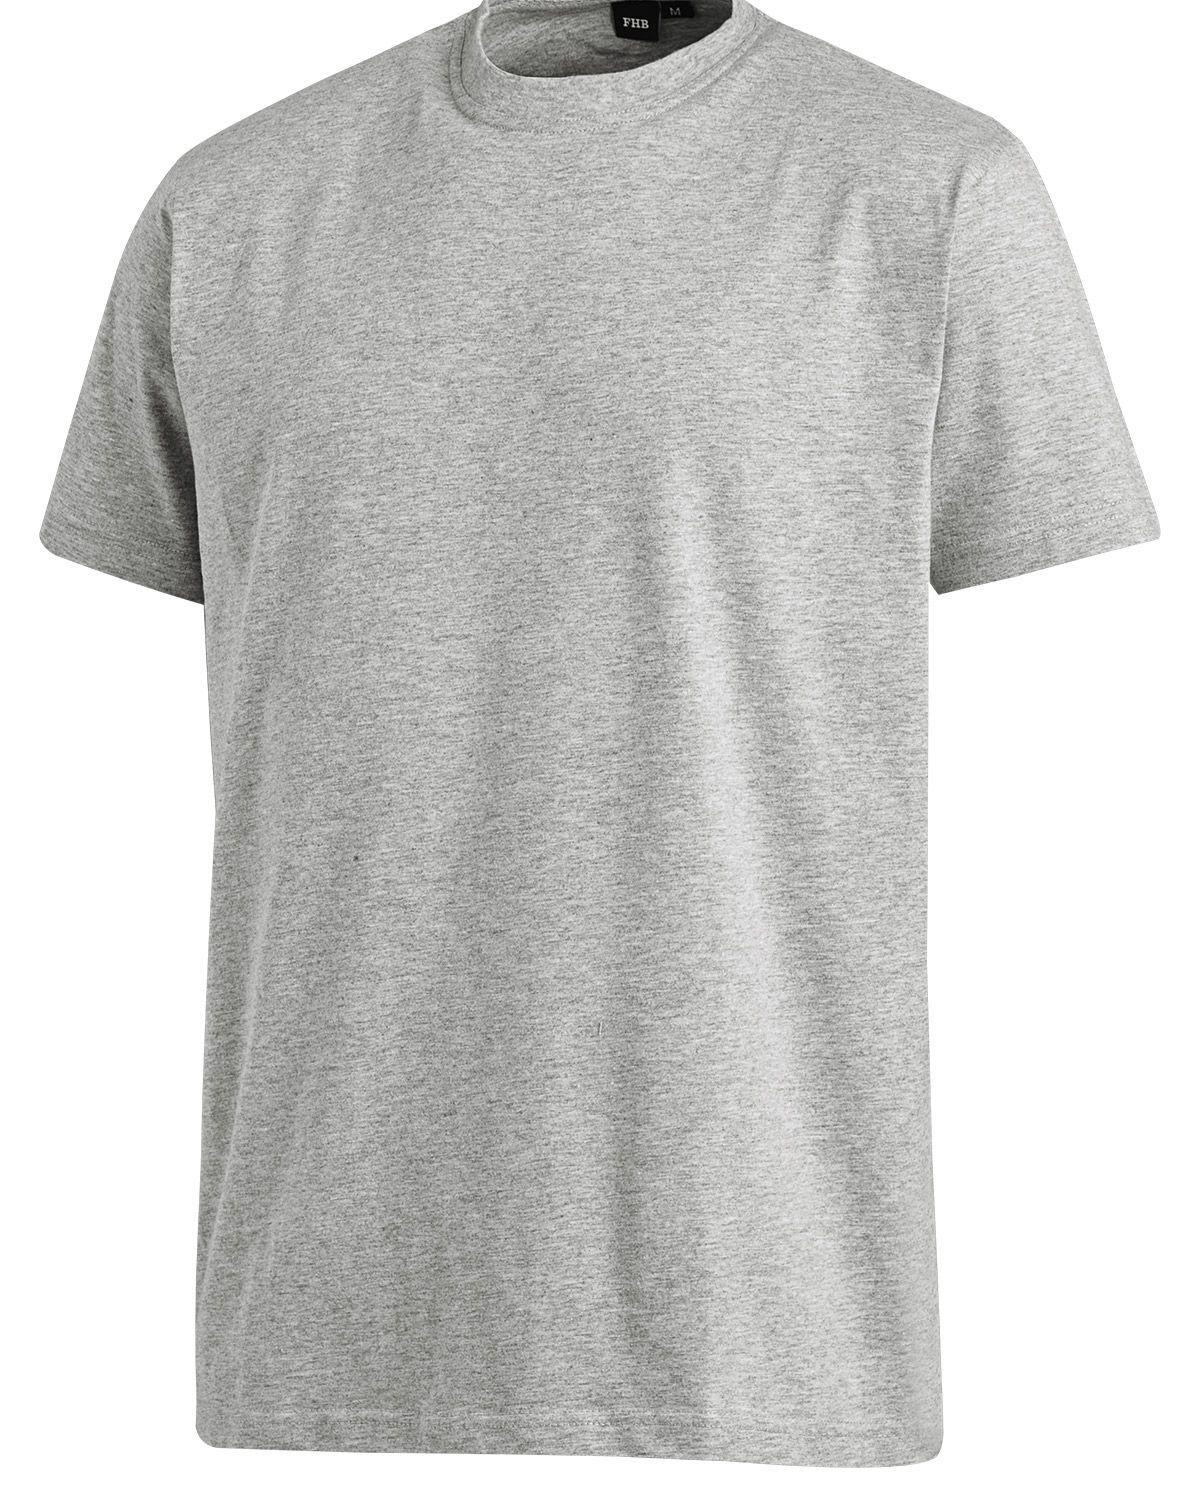 FHB T-Shirt - Jens (Grå, XL)